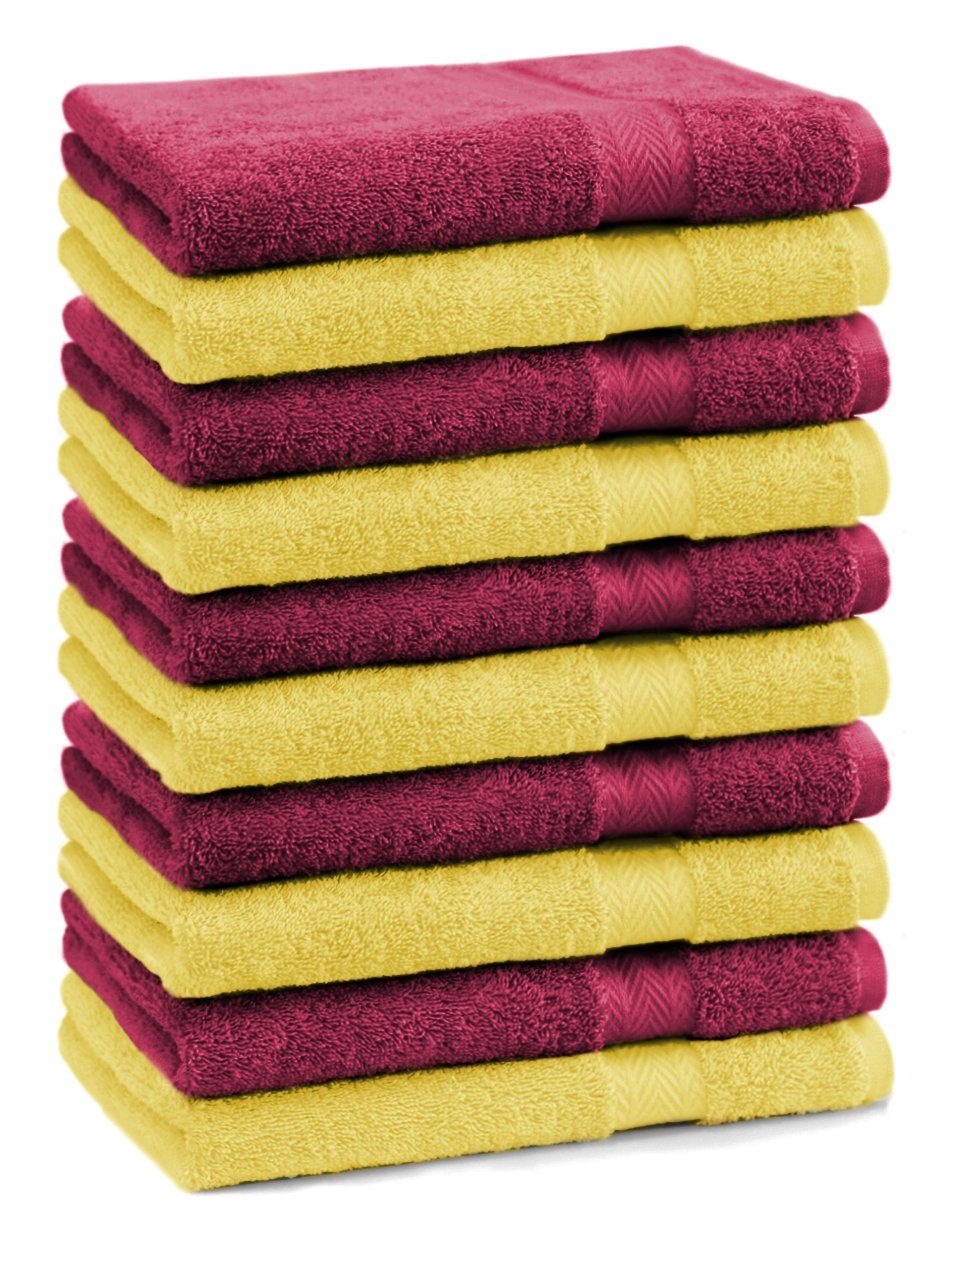 Betz Gästehandtücher 10 Stück Gästehandtücher Premium 100% Baumwolle Gästetuch-Set 30x50 cm Farbe gelb und dunkelrot, 100% Baumwolle